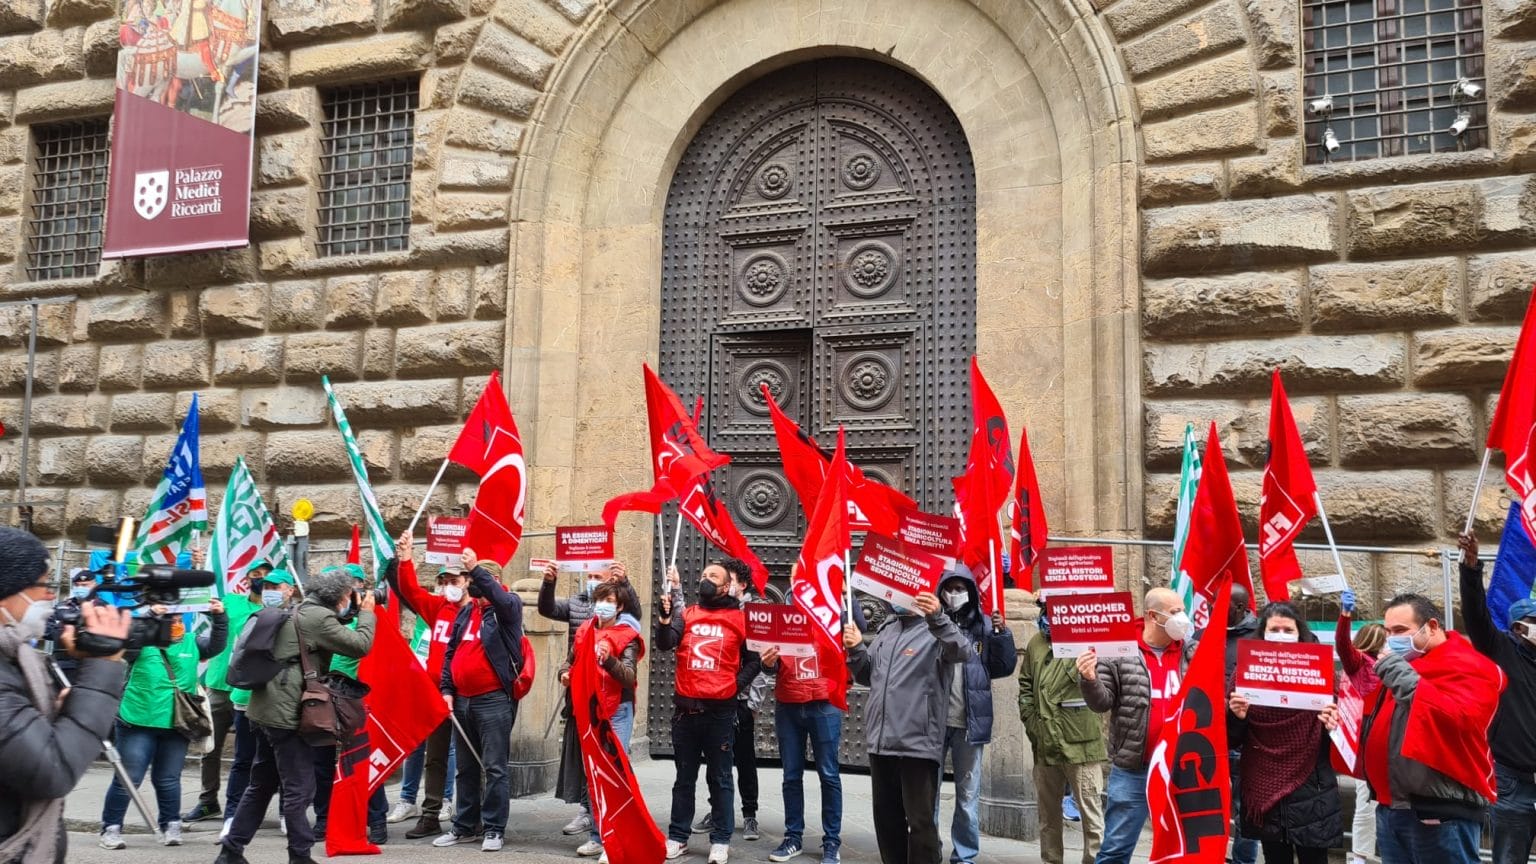 Lavoro agricolo: proteste davanti alle prefetture Firenze, Siena, Grosseto e Arezzo